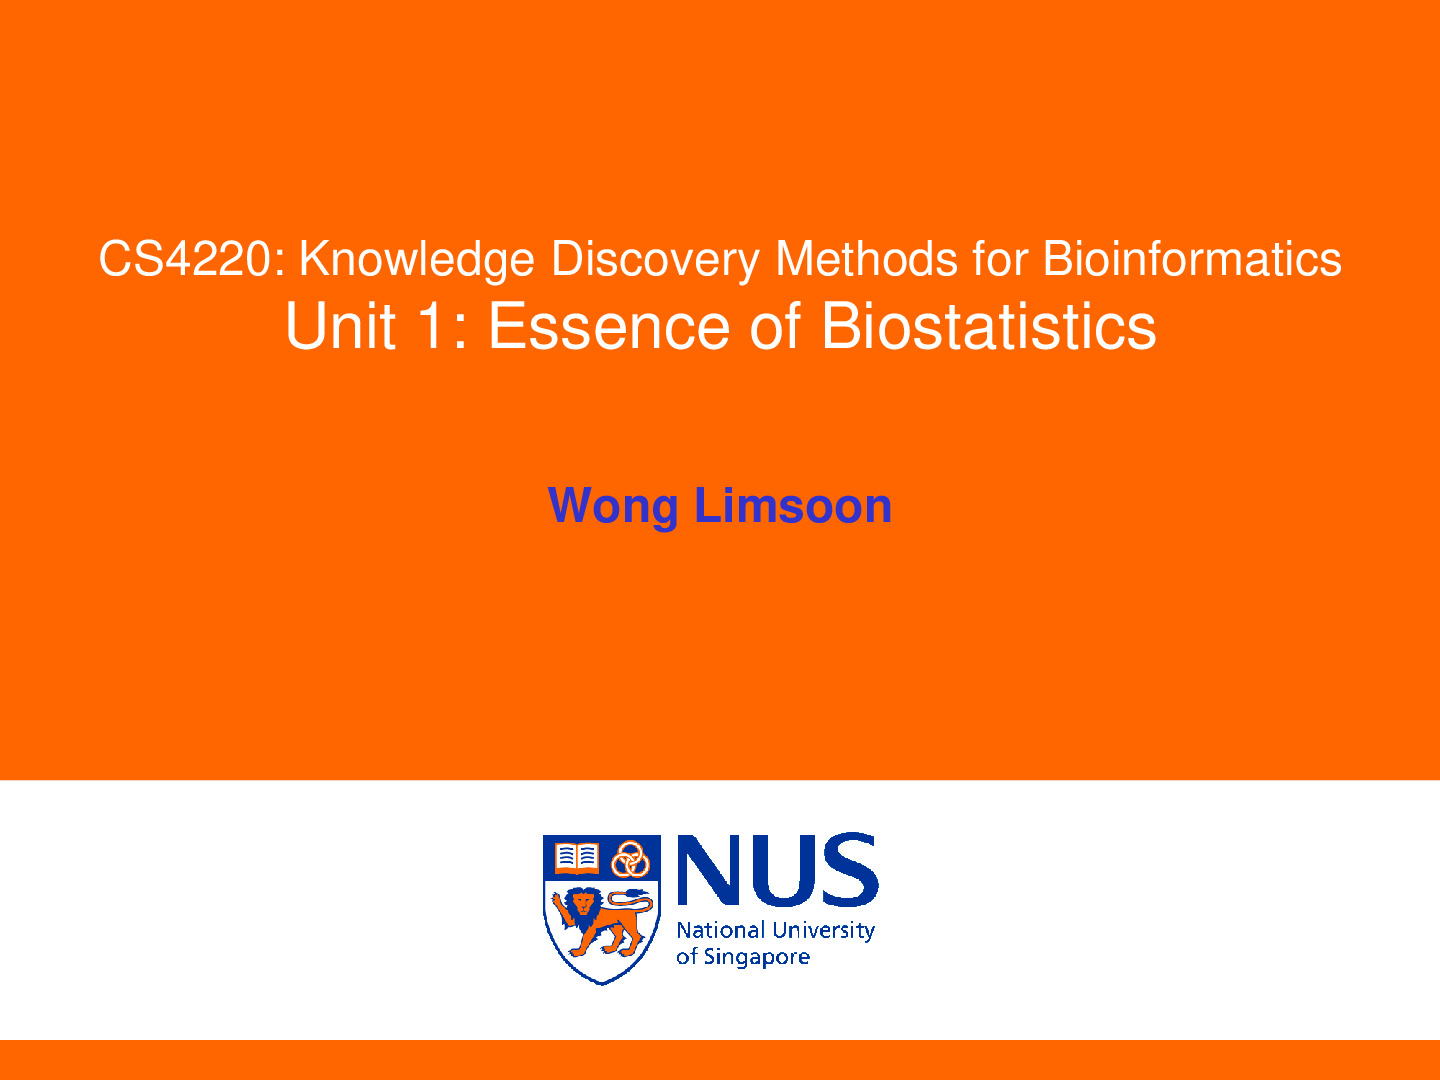 Bio_Statistics_unit1